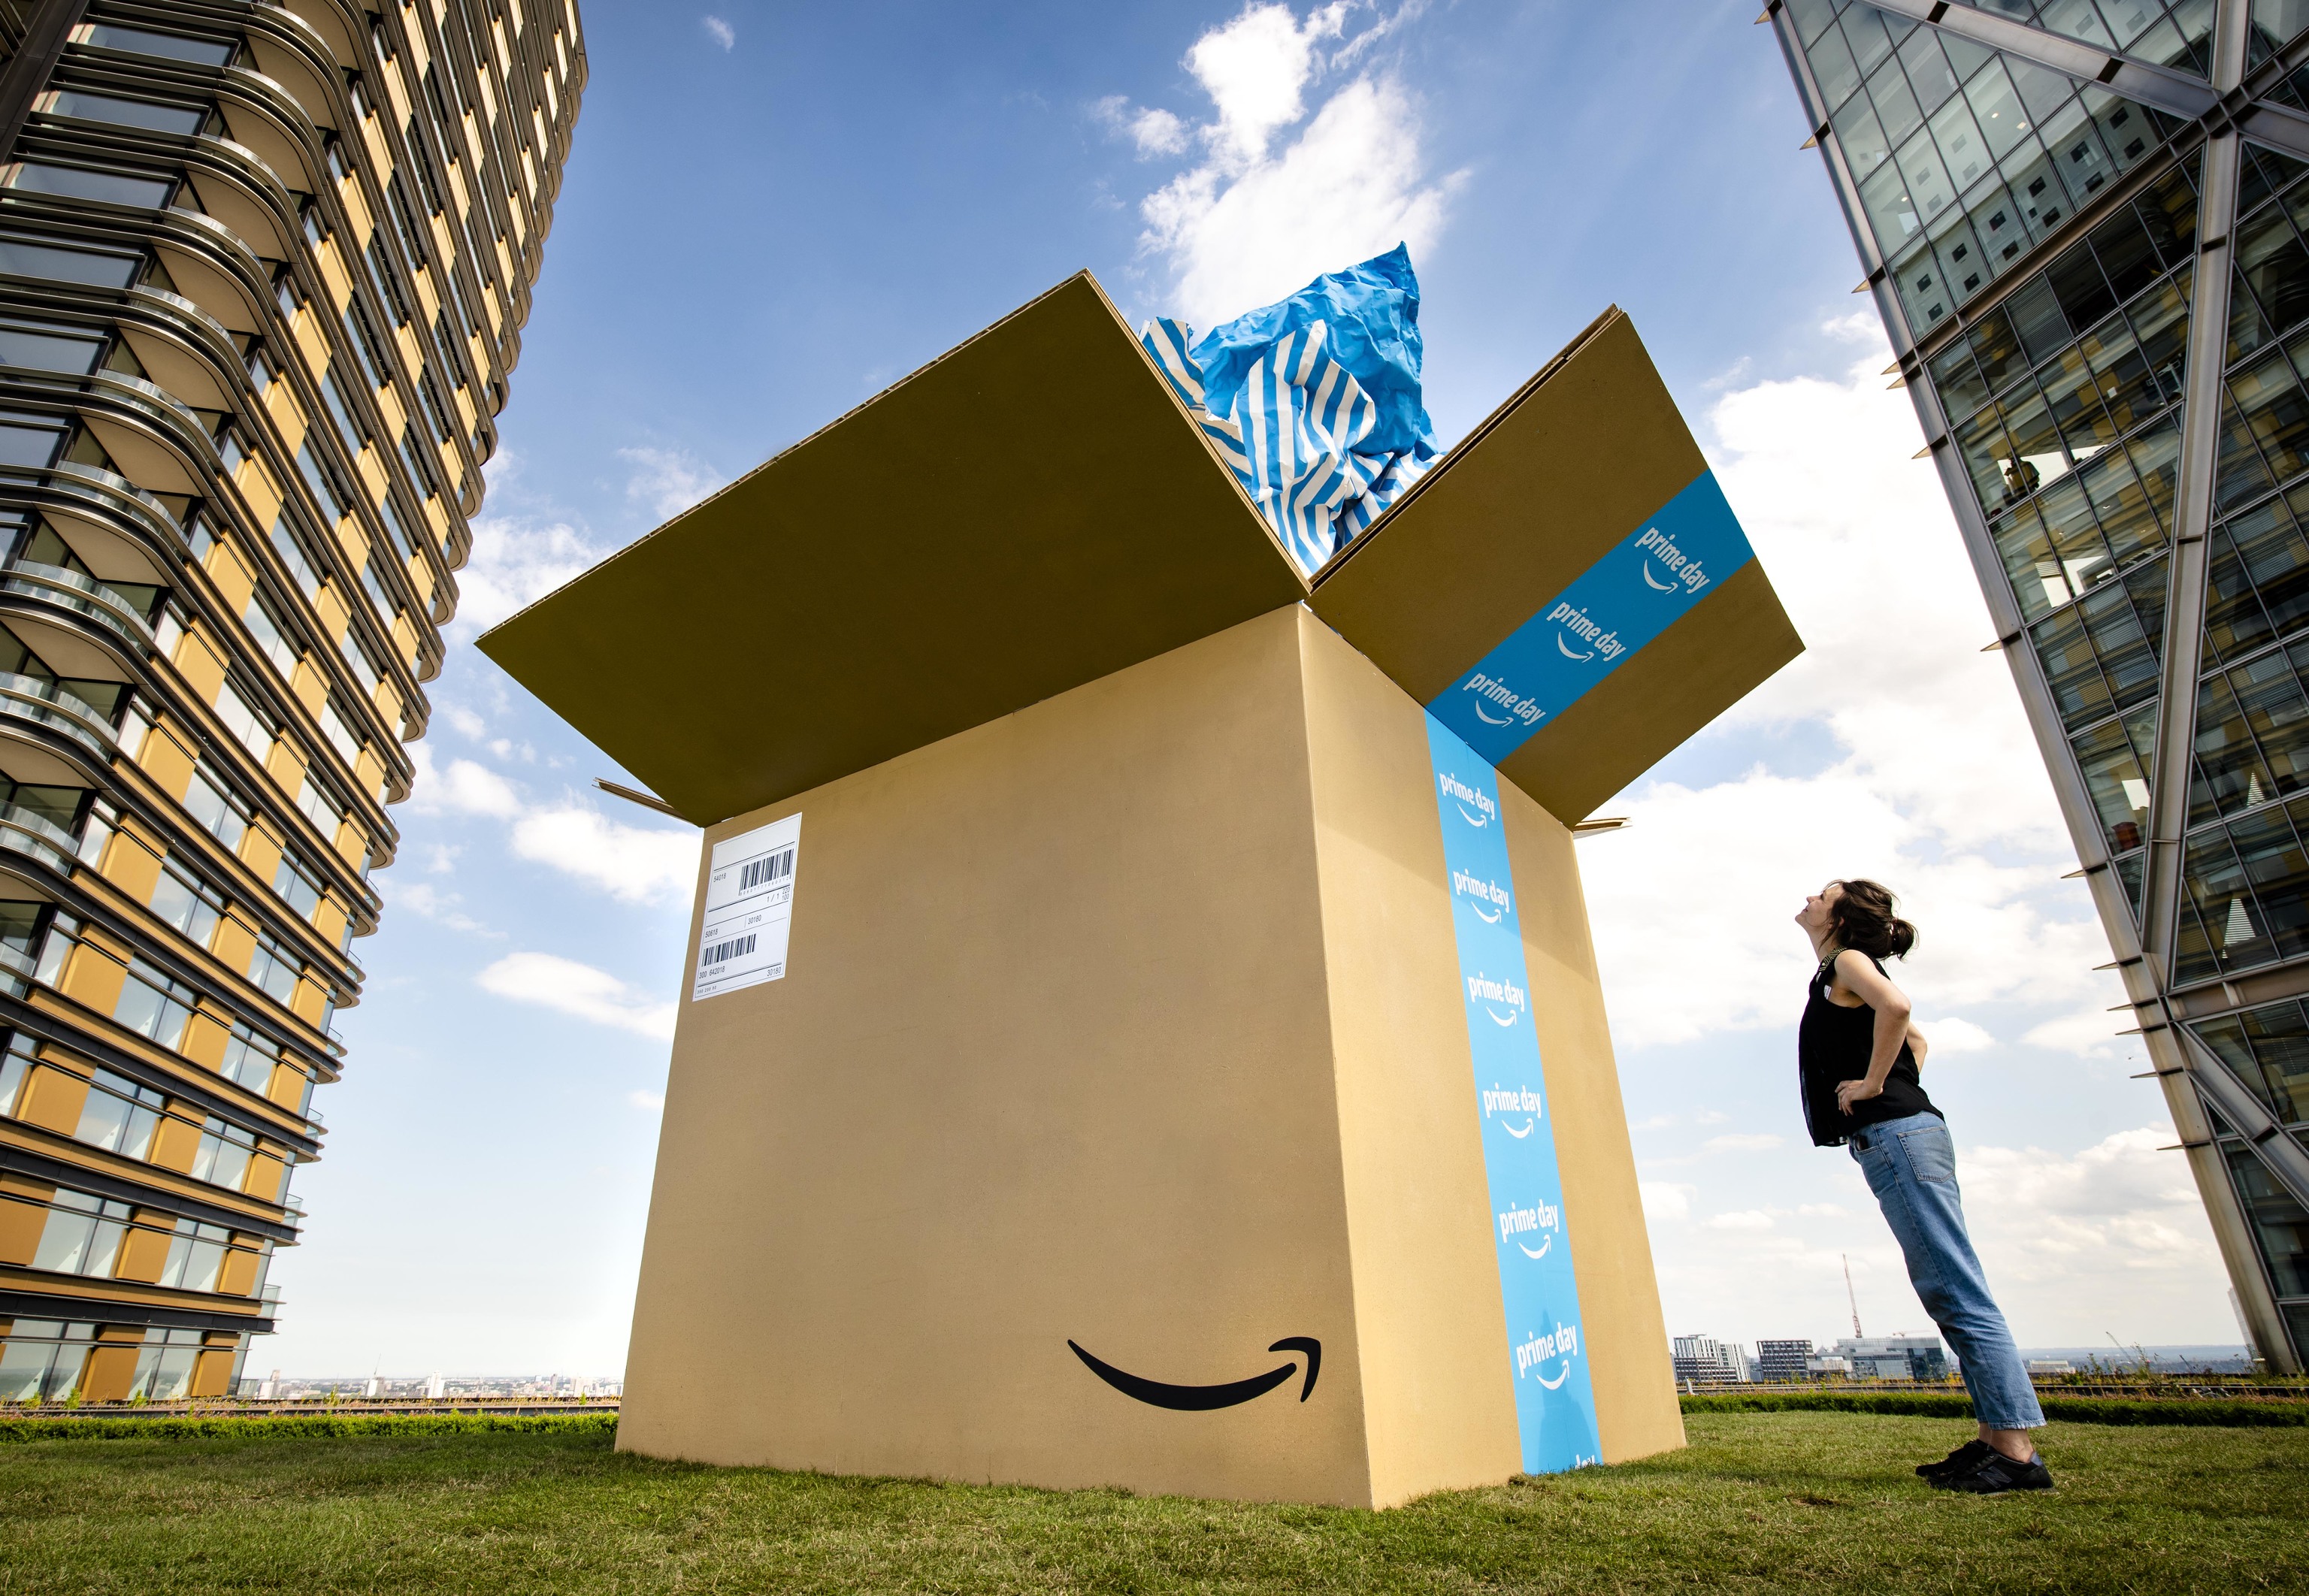 Imagen promocional de Amazon de una mujer junto a una caja abierta.